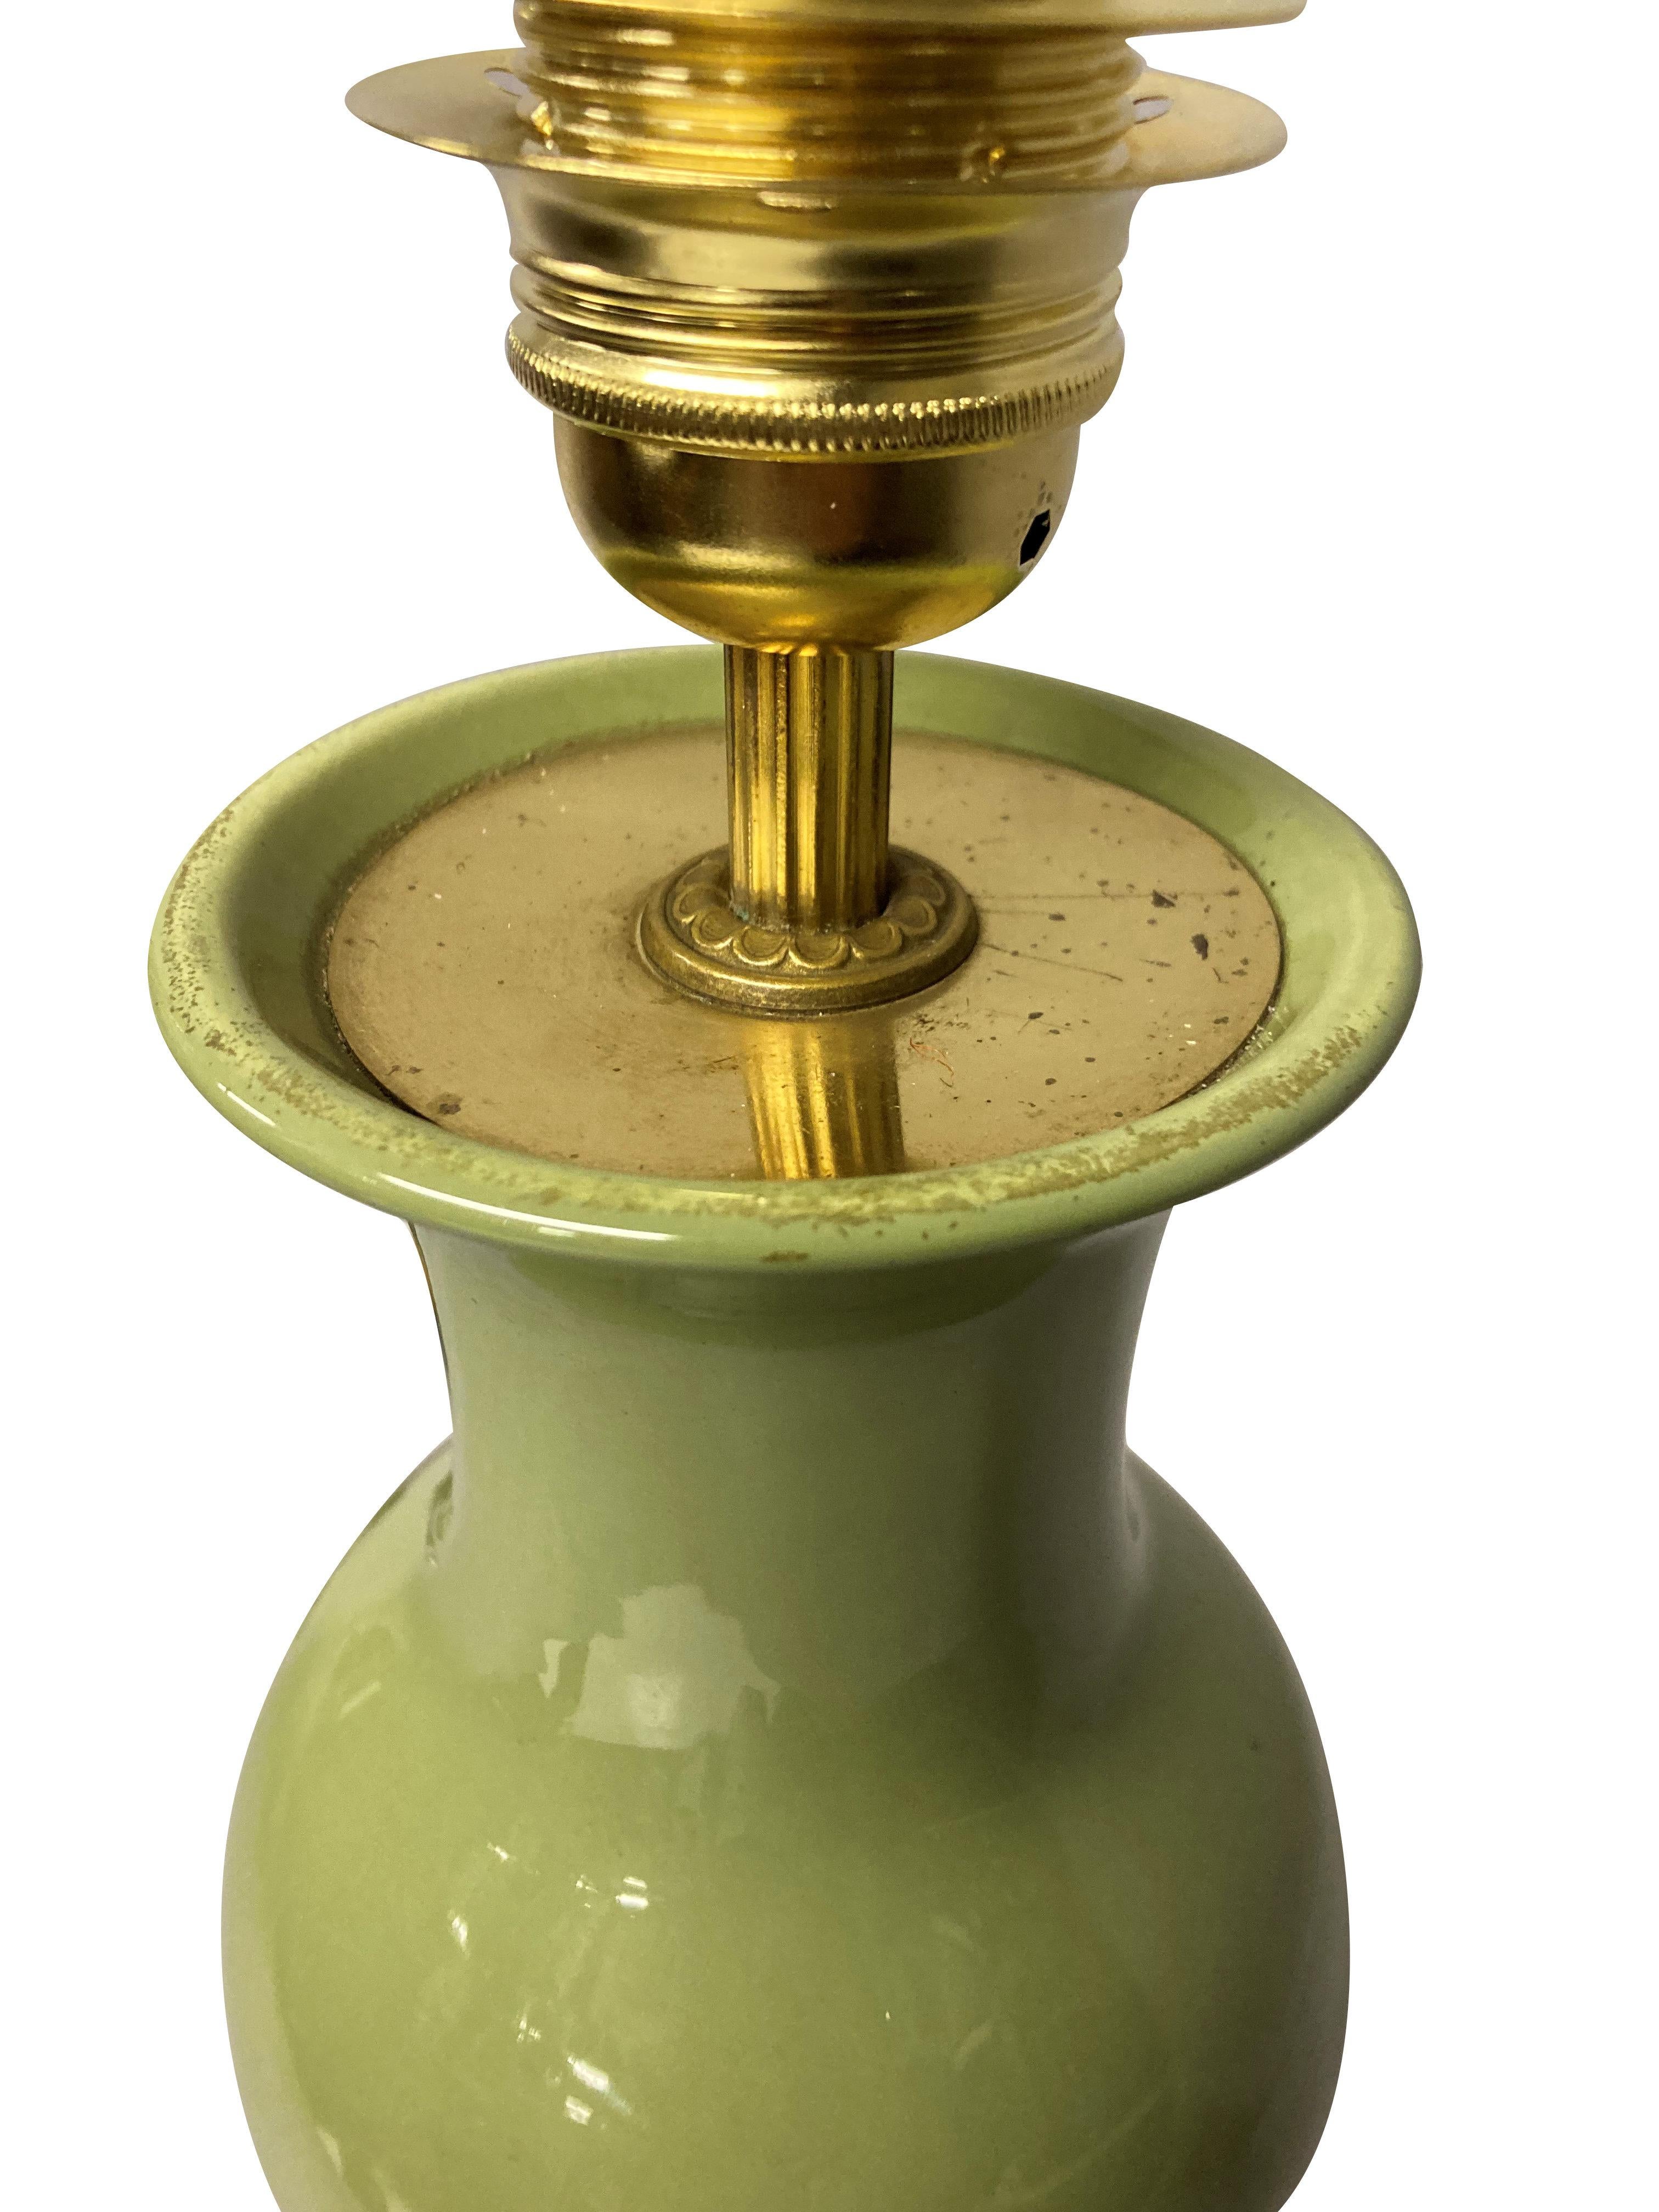 Une lampe chinoise en forme de vase émaillé vert sauge sur une base en bois dur sculpté, avec des accessoires en laiton.